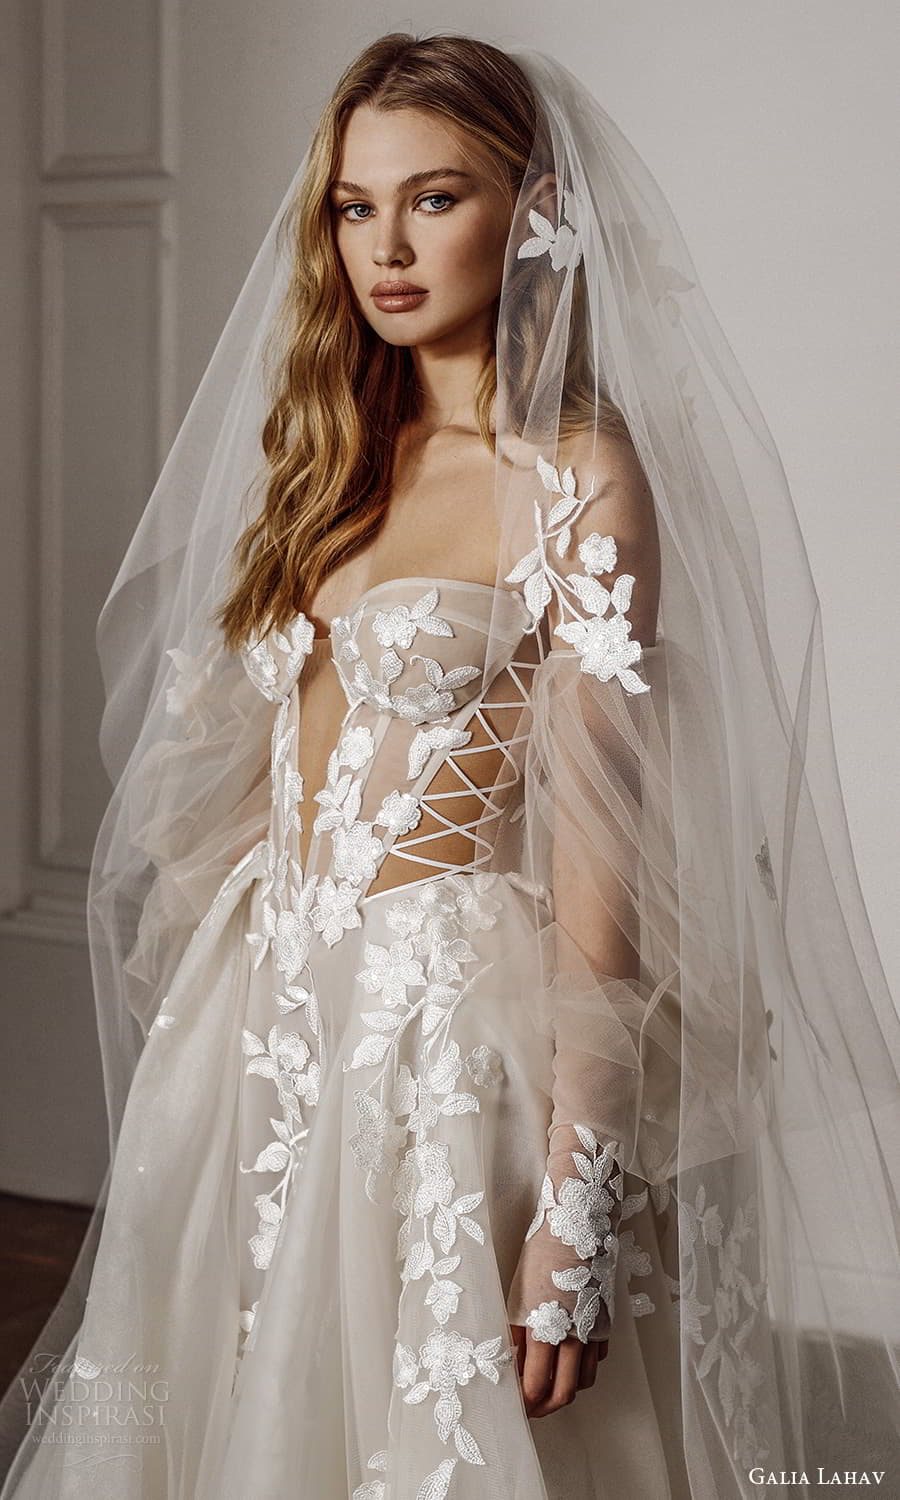 Galia Lahav Spring 2022 Couture Wedding Dresses — “Do Not Disturb